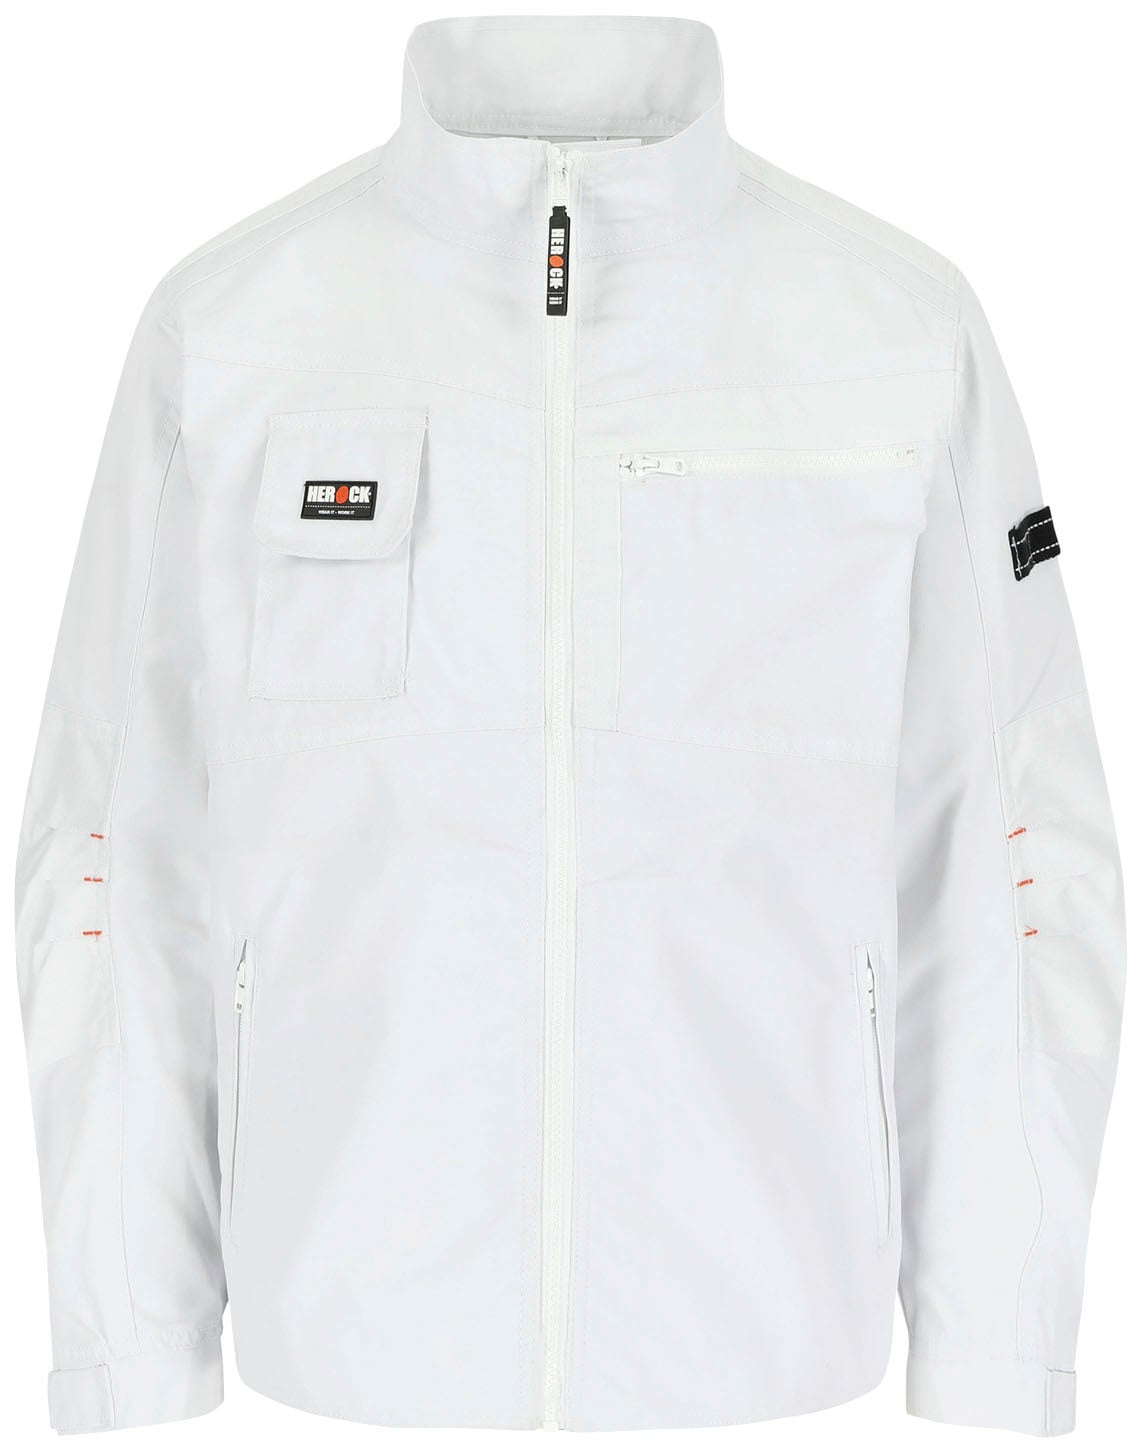 Wasserabweisend - Jacke«, robust verstellbare - - Arbeitsjacke »Anzar Bündchen online bei Taschen 7 Herock